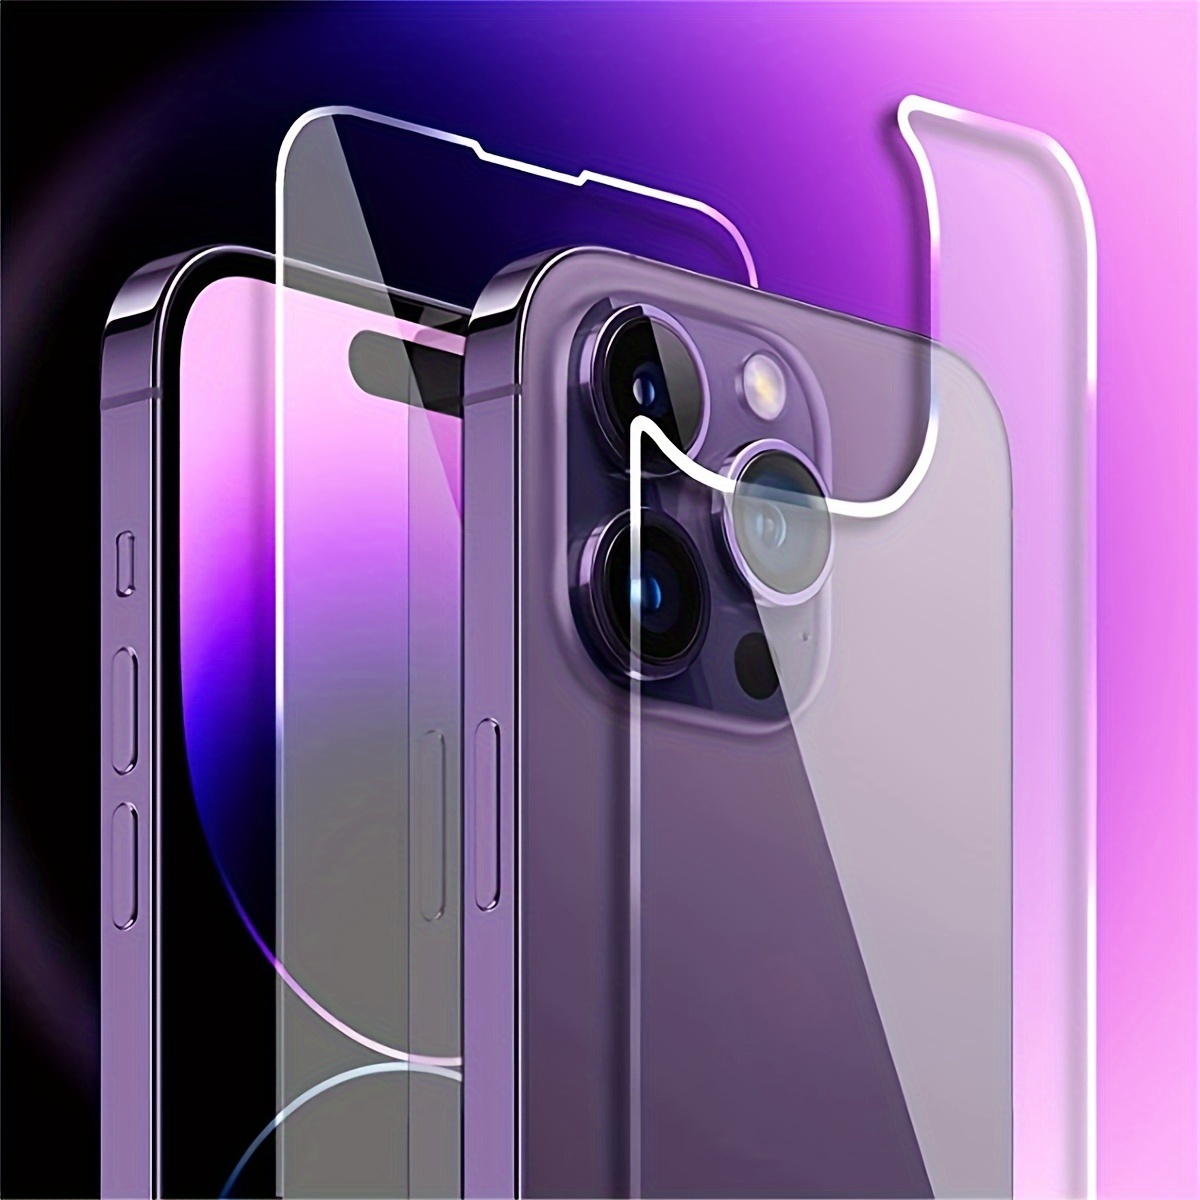 Kit para celular iPhone 11 Pro Vidrio Templado de cámara + Cristal  Nanoglass protector de pantalla